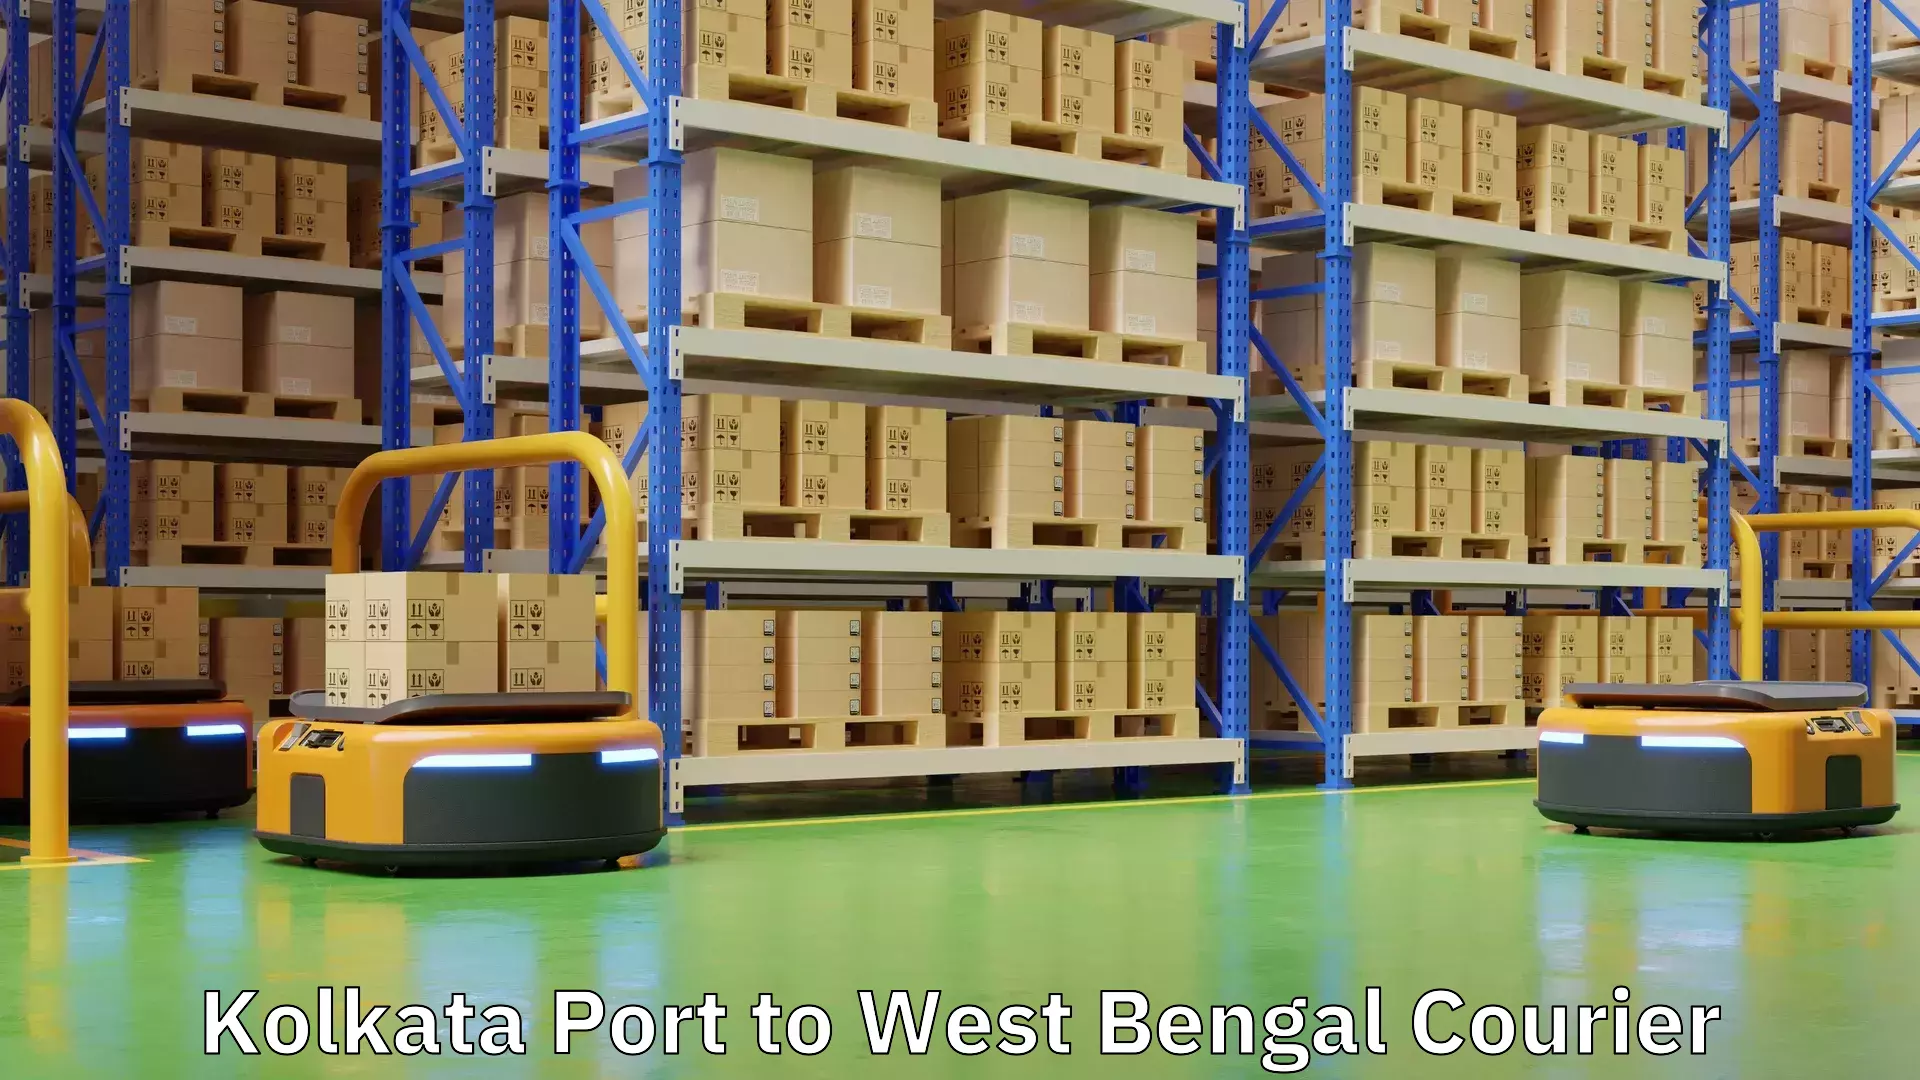 Door-to-door freight service Kolkata Port to Rishra